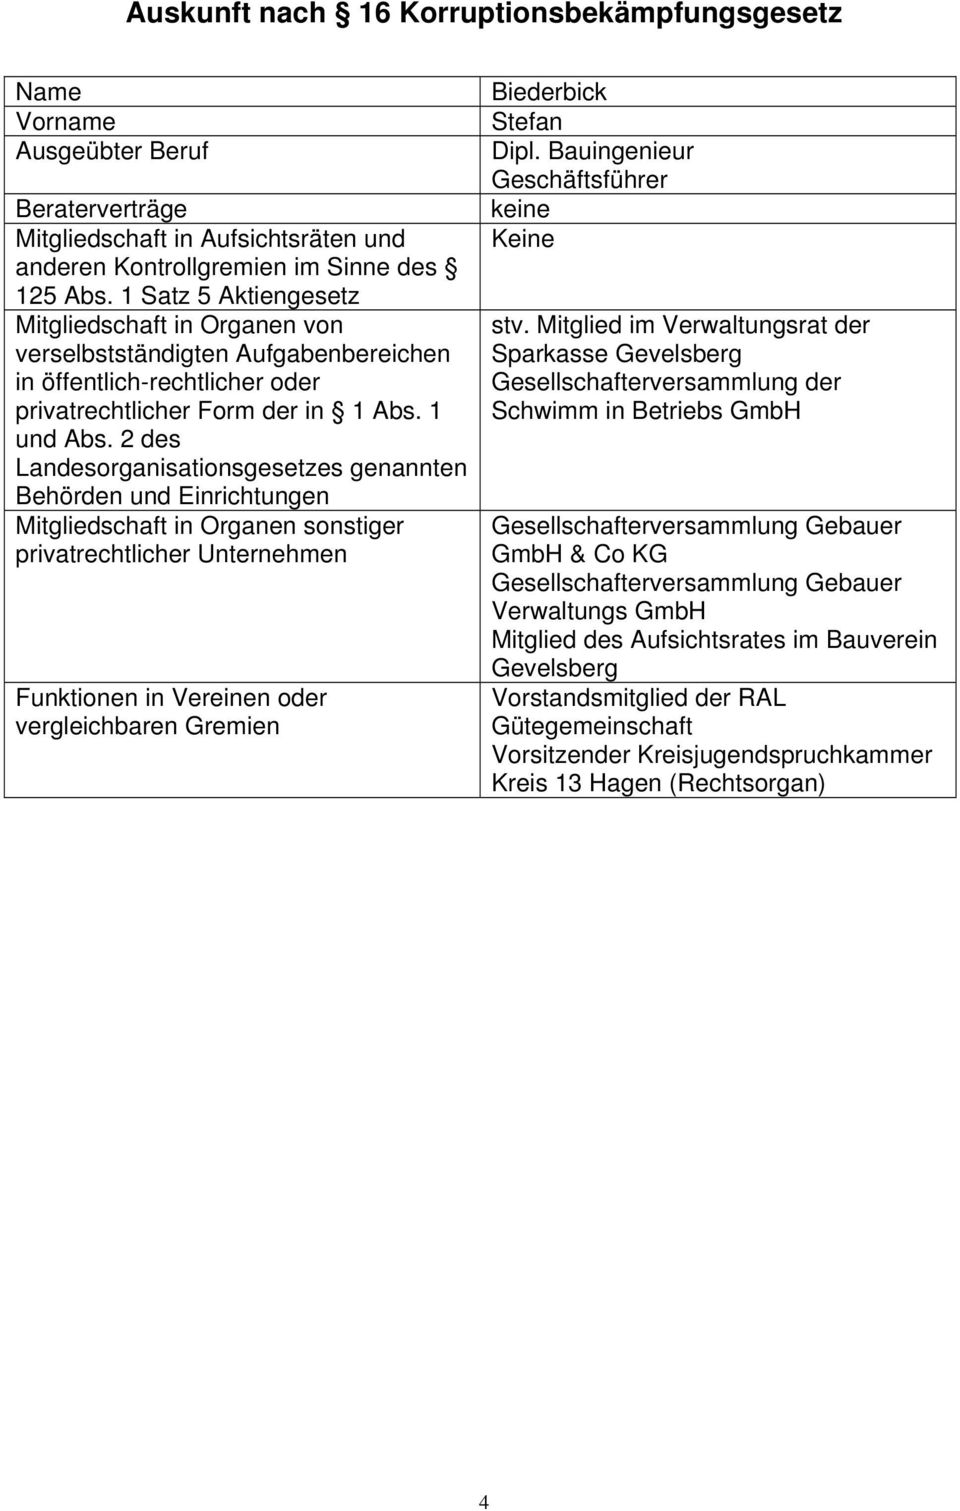 Co KG Gesellschafterversammlung Gebauer Verwaltungs GmbH Mitglied des Aufsichtsrates im